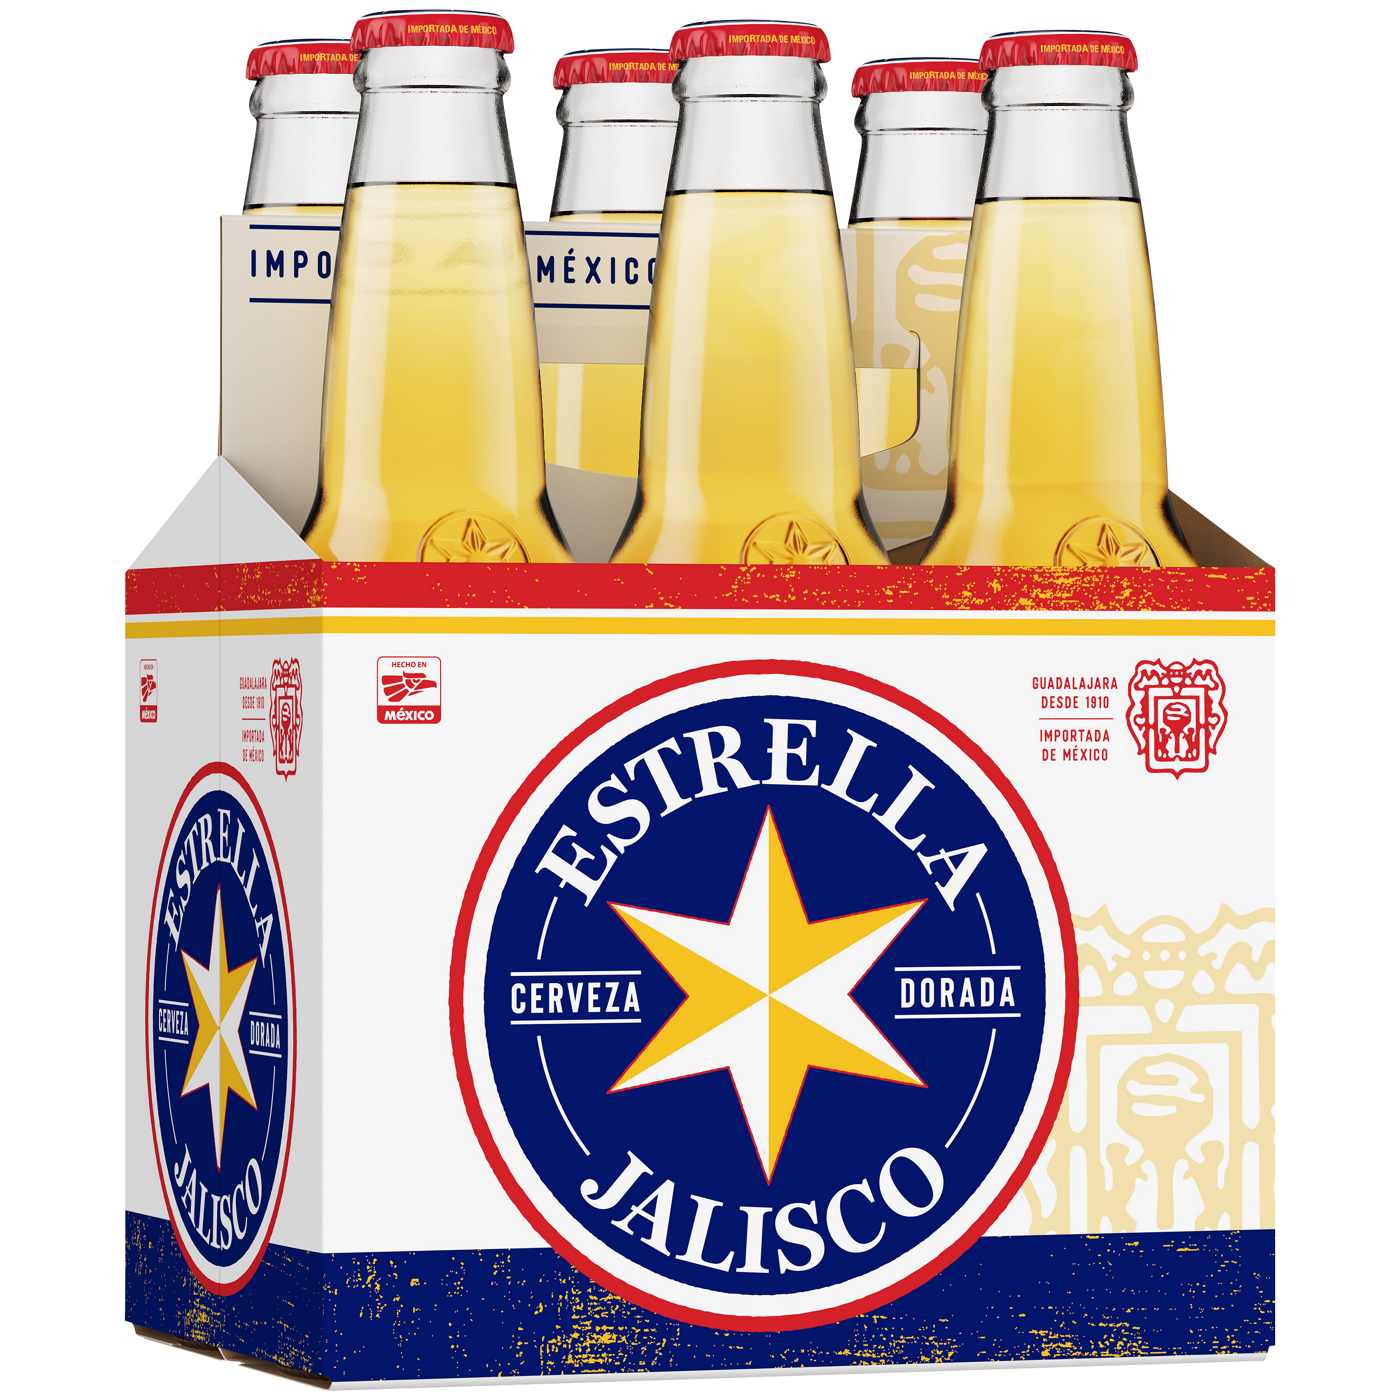 Estrella Jalisco Pilsner Beer 12 oz Bottles; image 1 of 2